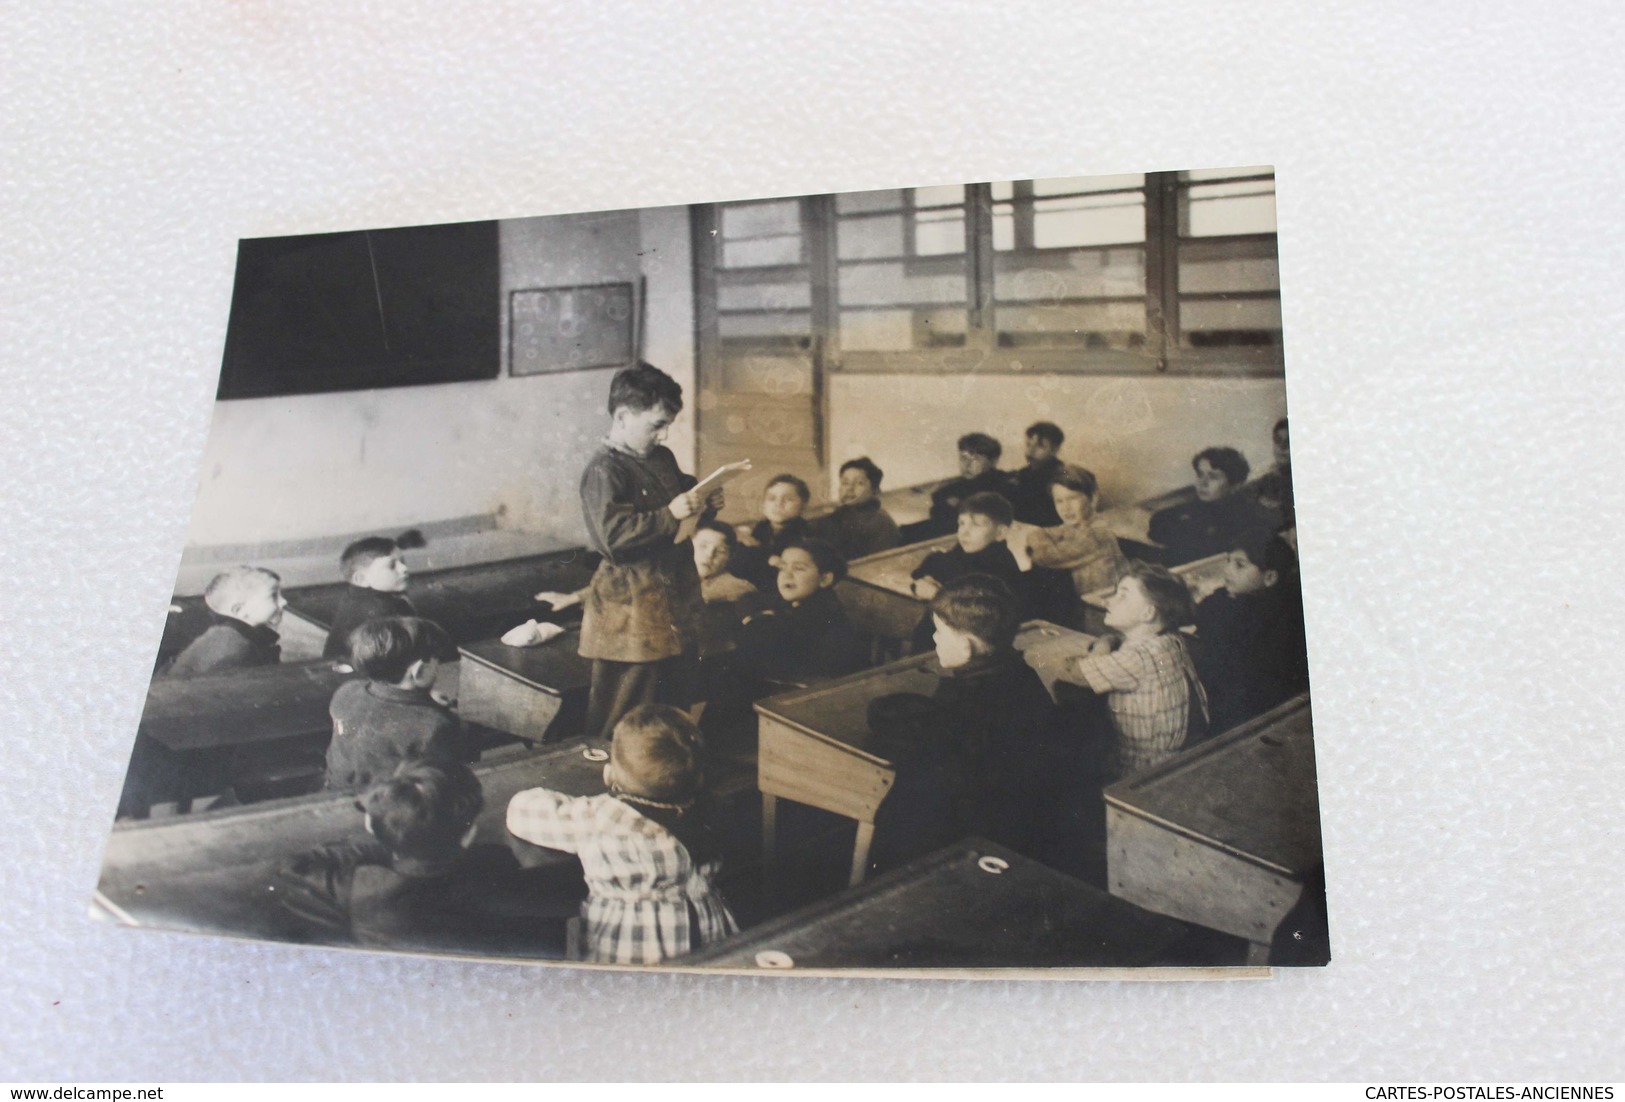 Photographie Originale De Presse WWII - Lecture à L'école D'une Lettre à Un STO - Propagande [circa 1941 -180X13] - War, Military